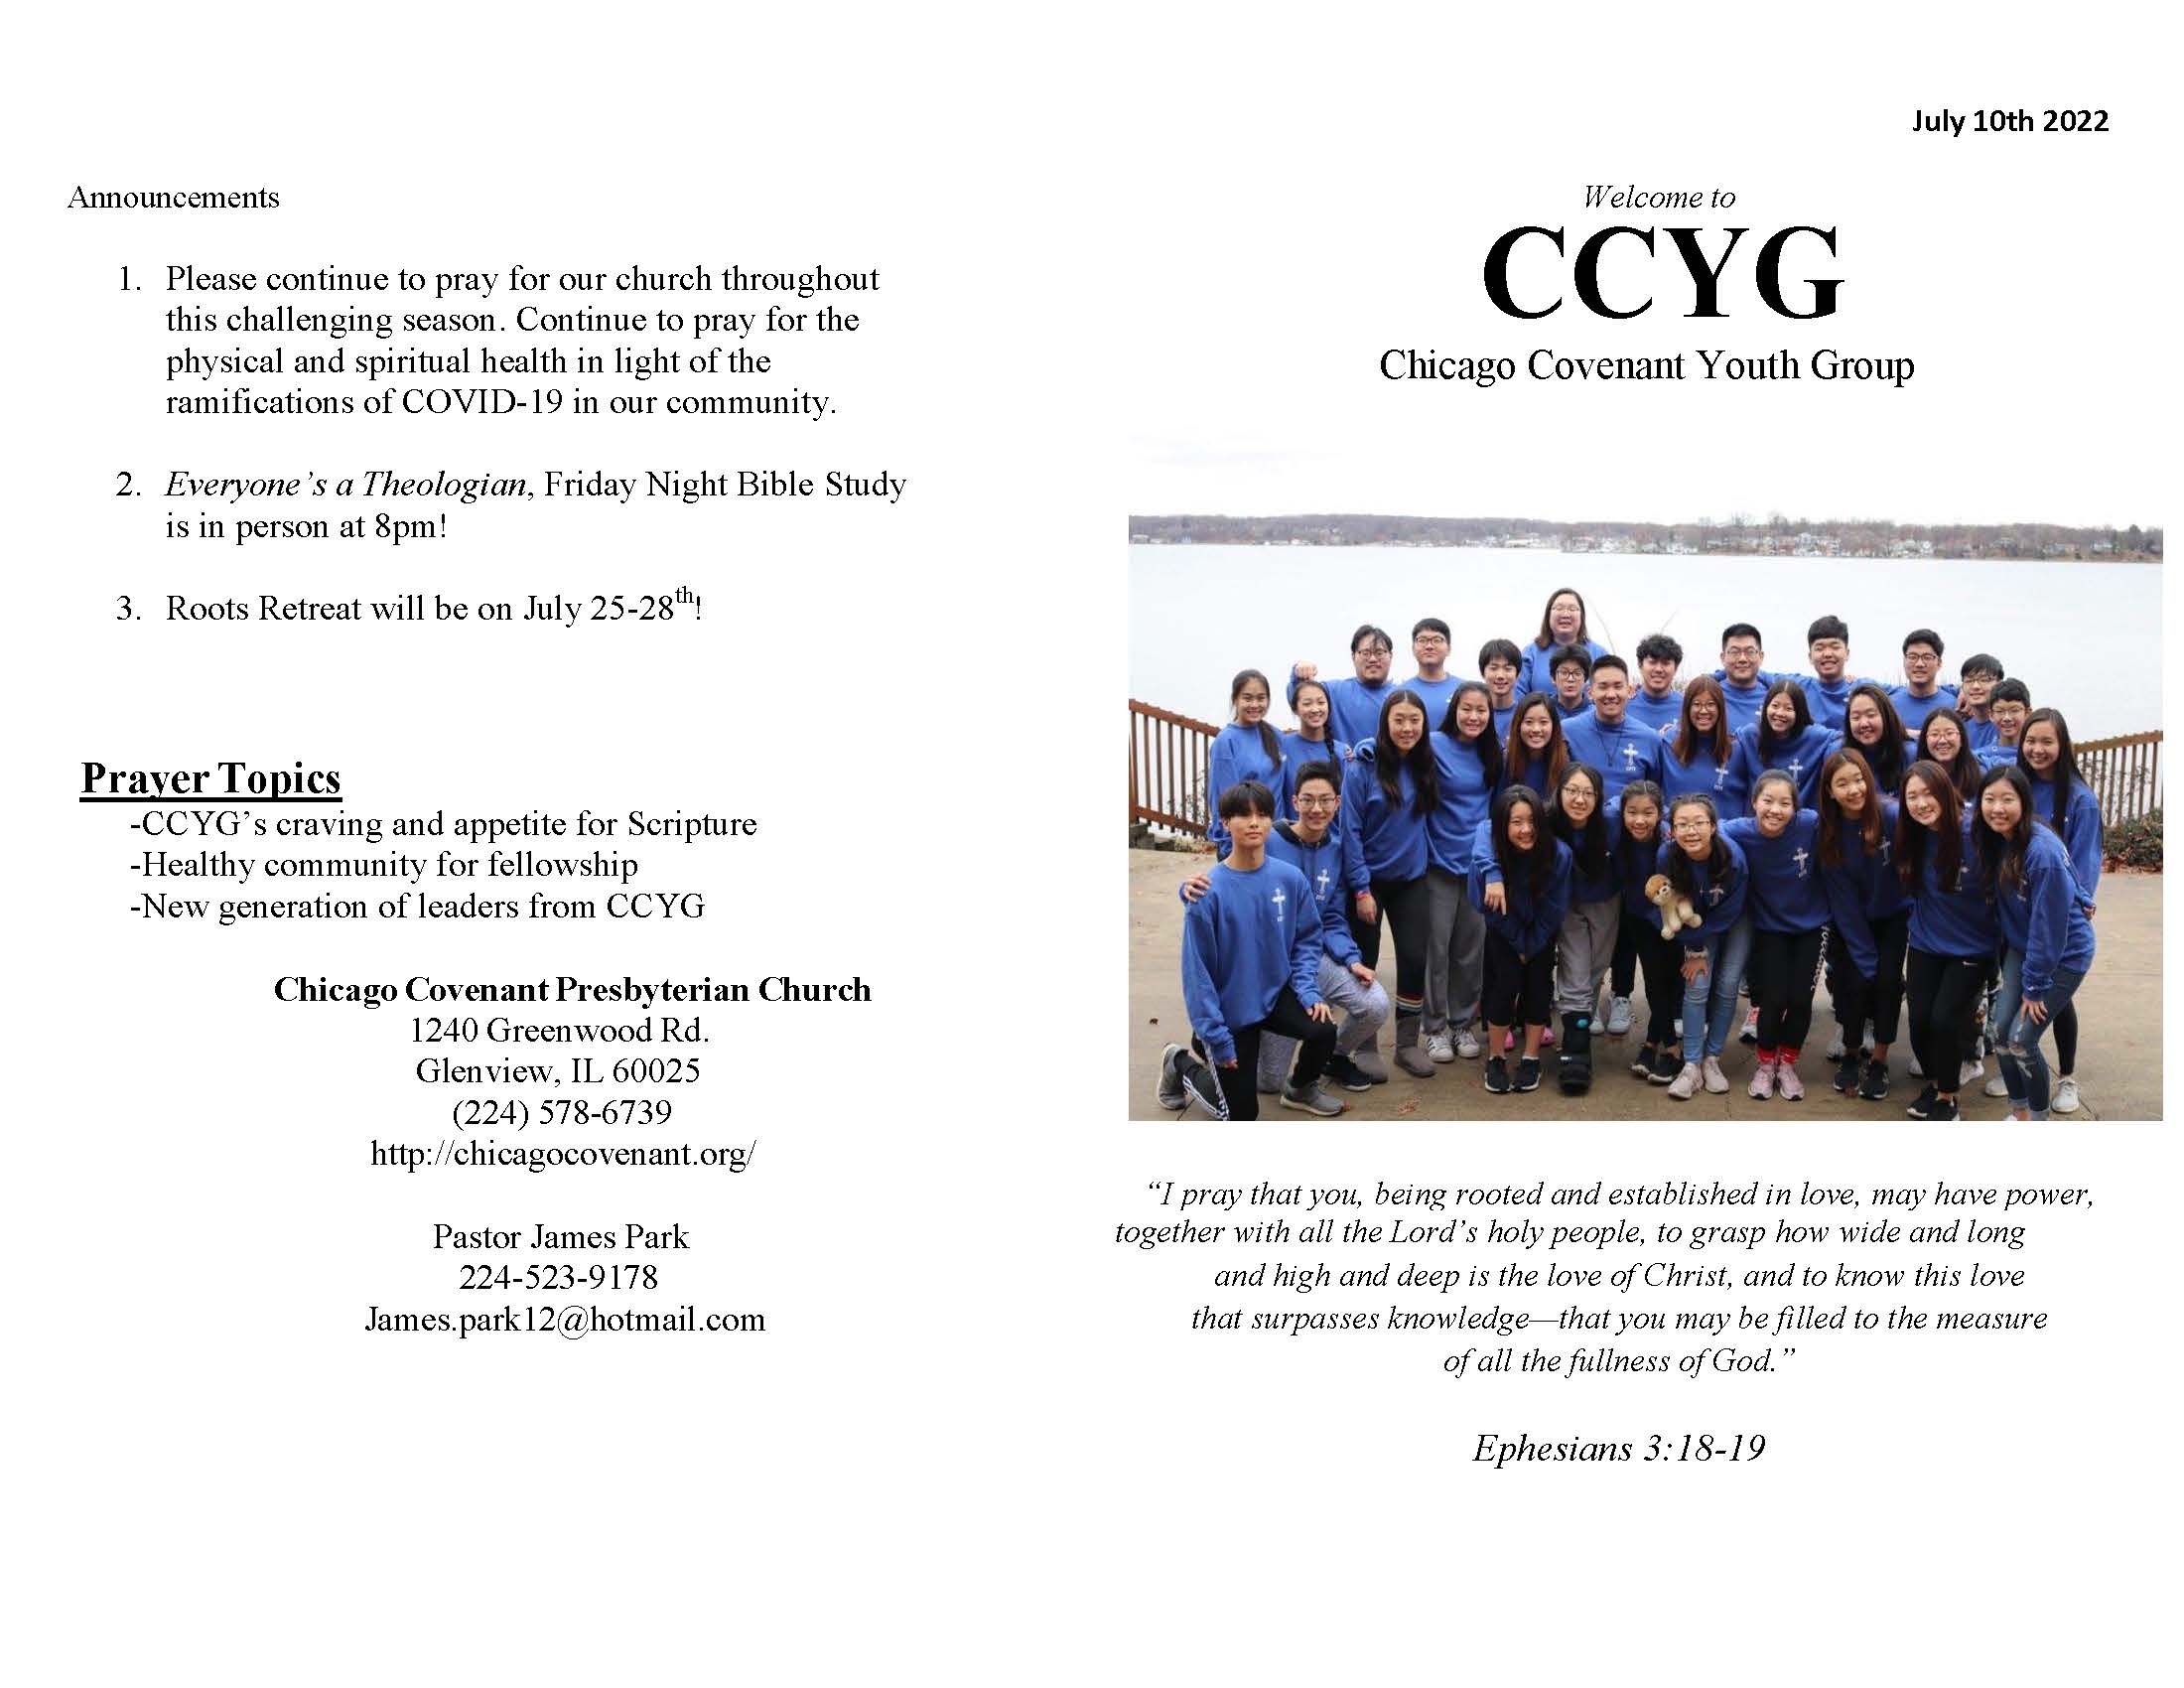 CCYG Bulletin 071022_Page_1.jpg